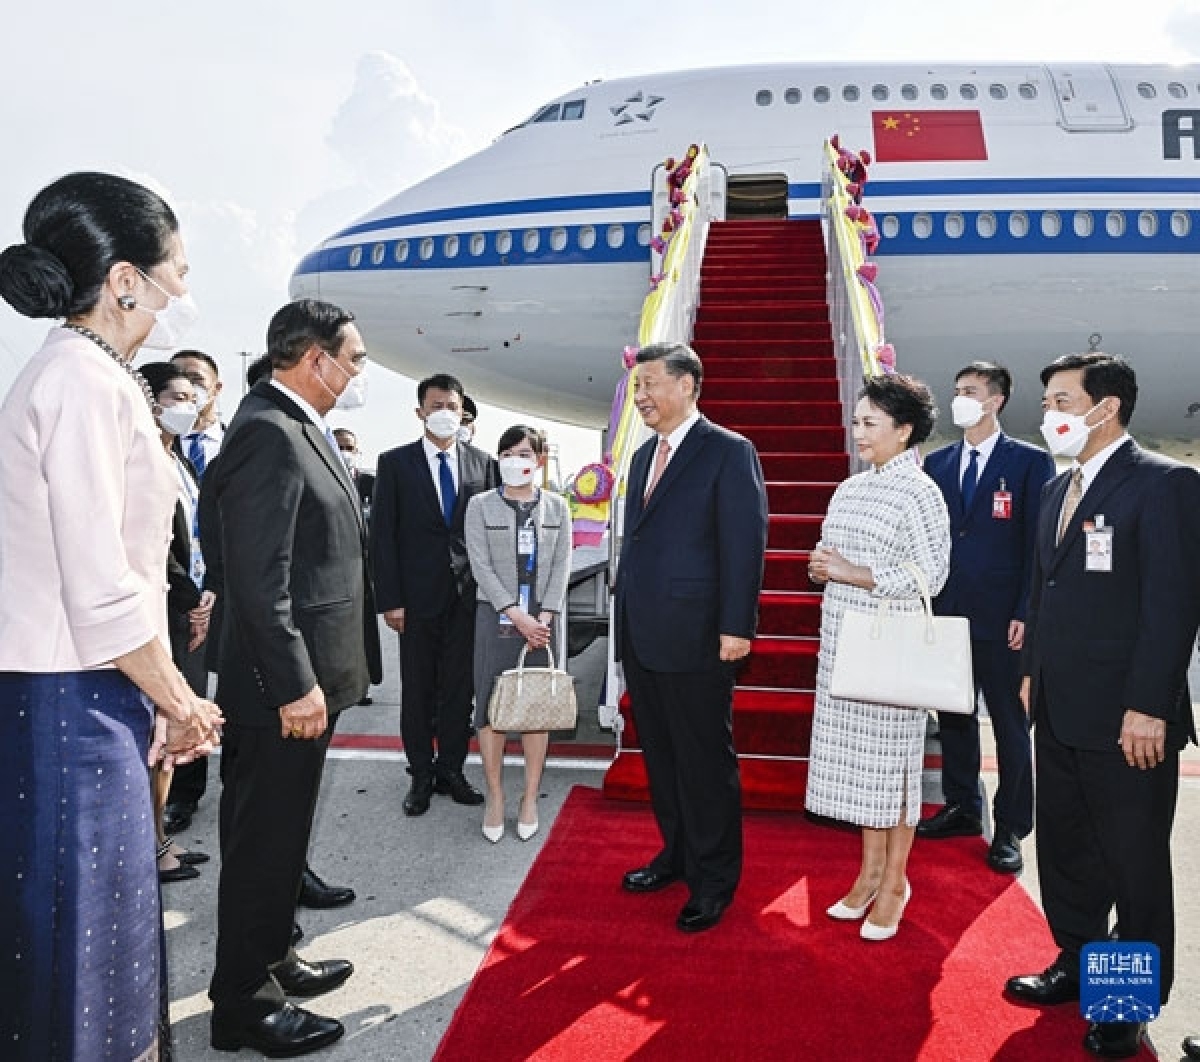 Chủ tịch Trung Quốc Tập Cận Bình đến Bangkok, Thái Lan, tham dự Hội nghị các nhà lãnh đạo kinh tế APEC lần thứ 29. Ảnh: Tân Hoa xã.